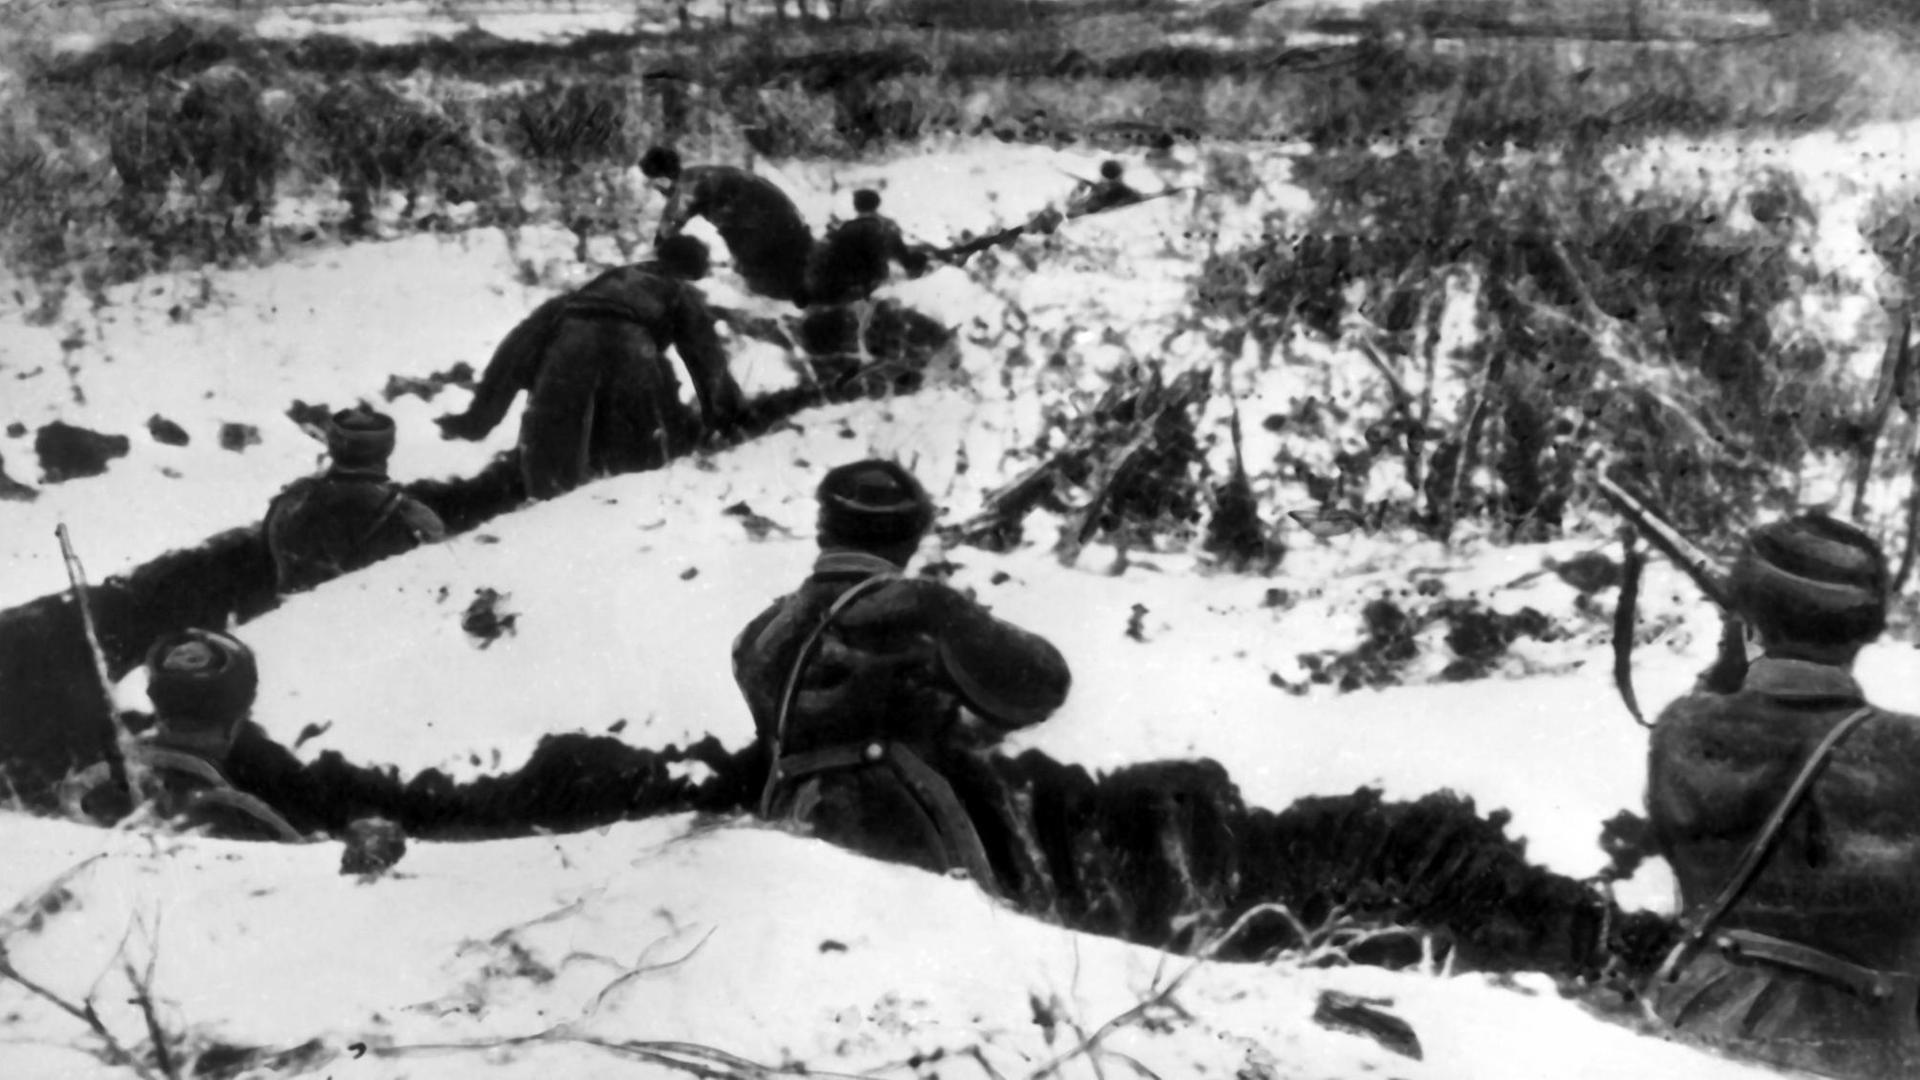 Sowjetische Soldaten in Schützengräben, aufgenommen während des Zweiten Weltkriegs.